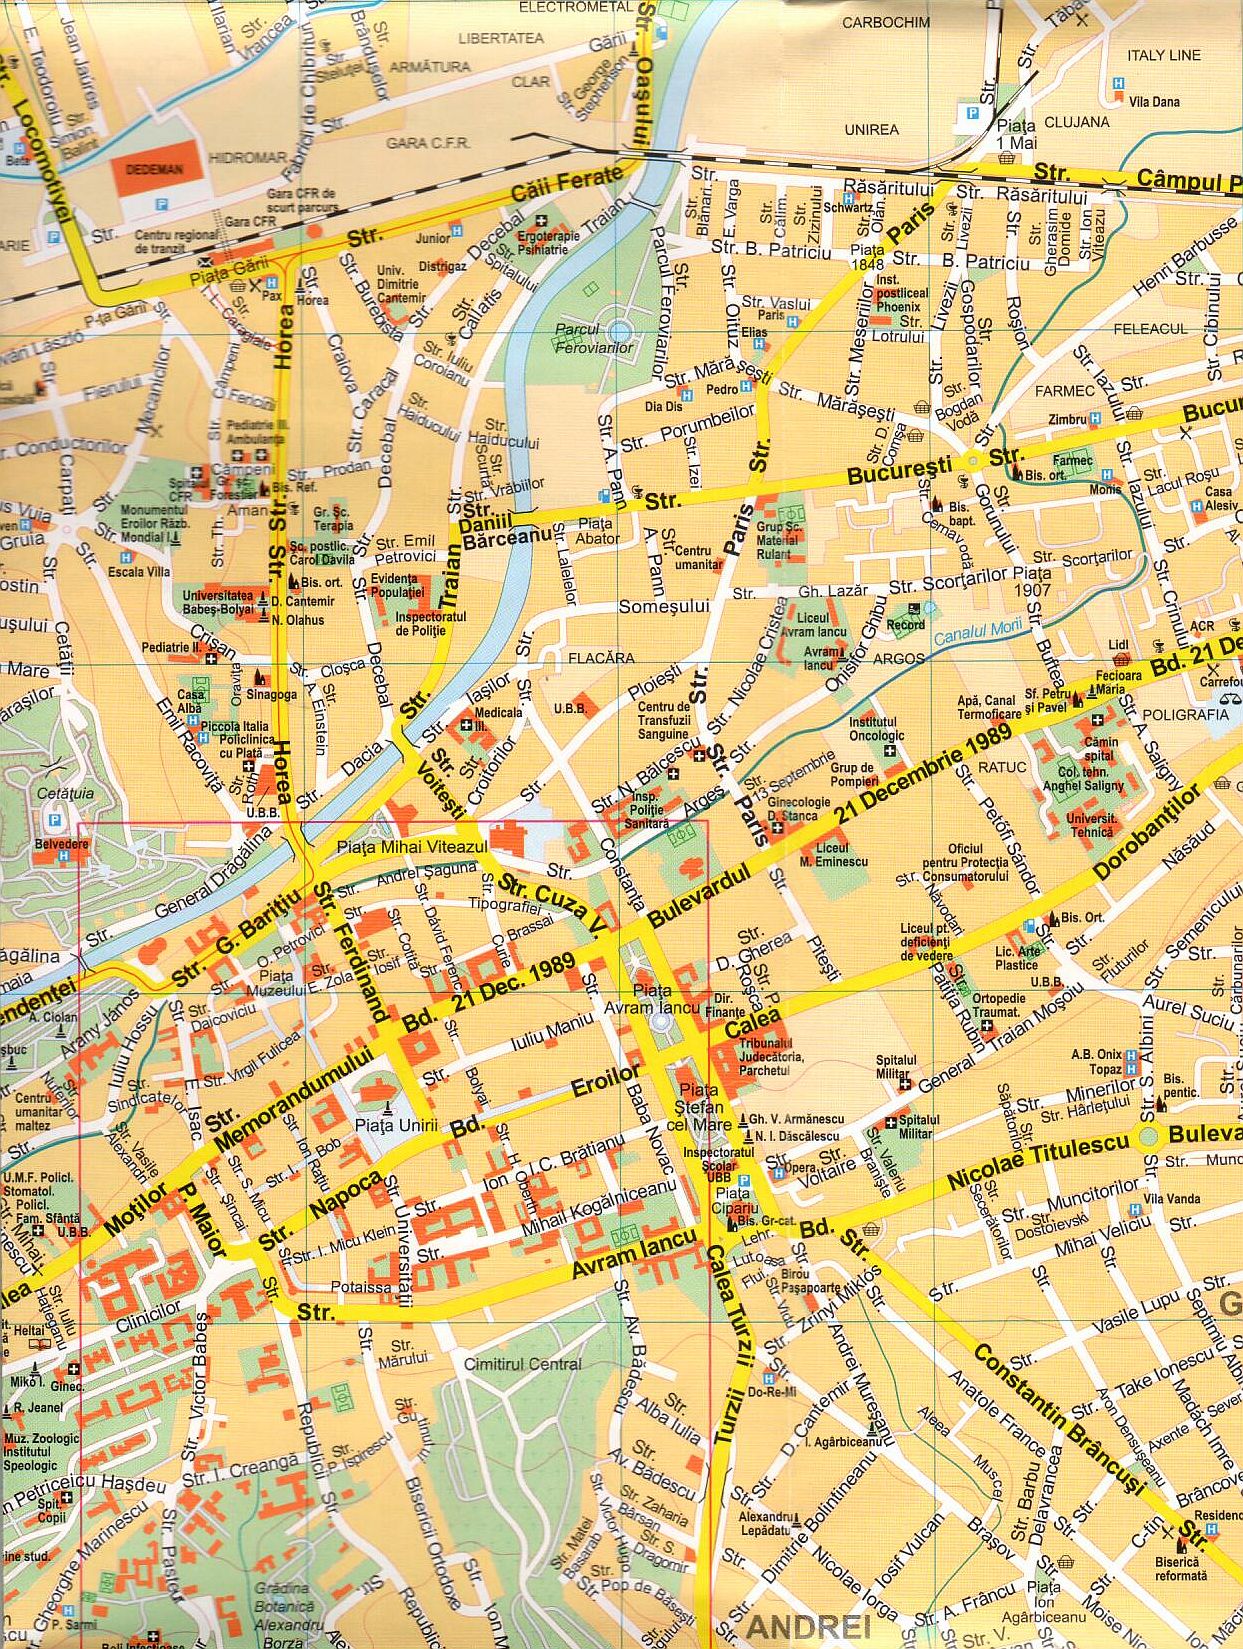 Oradea 1:15.000 sample map